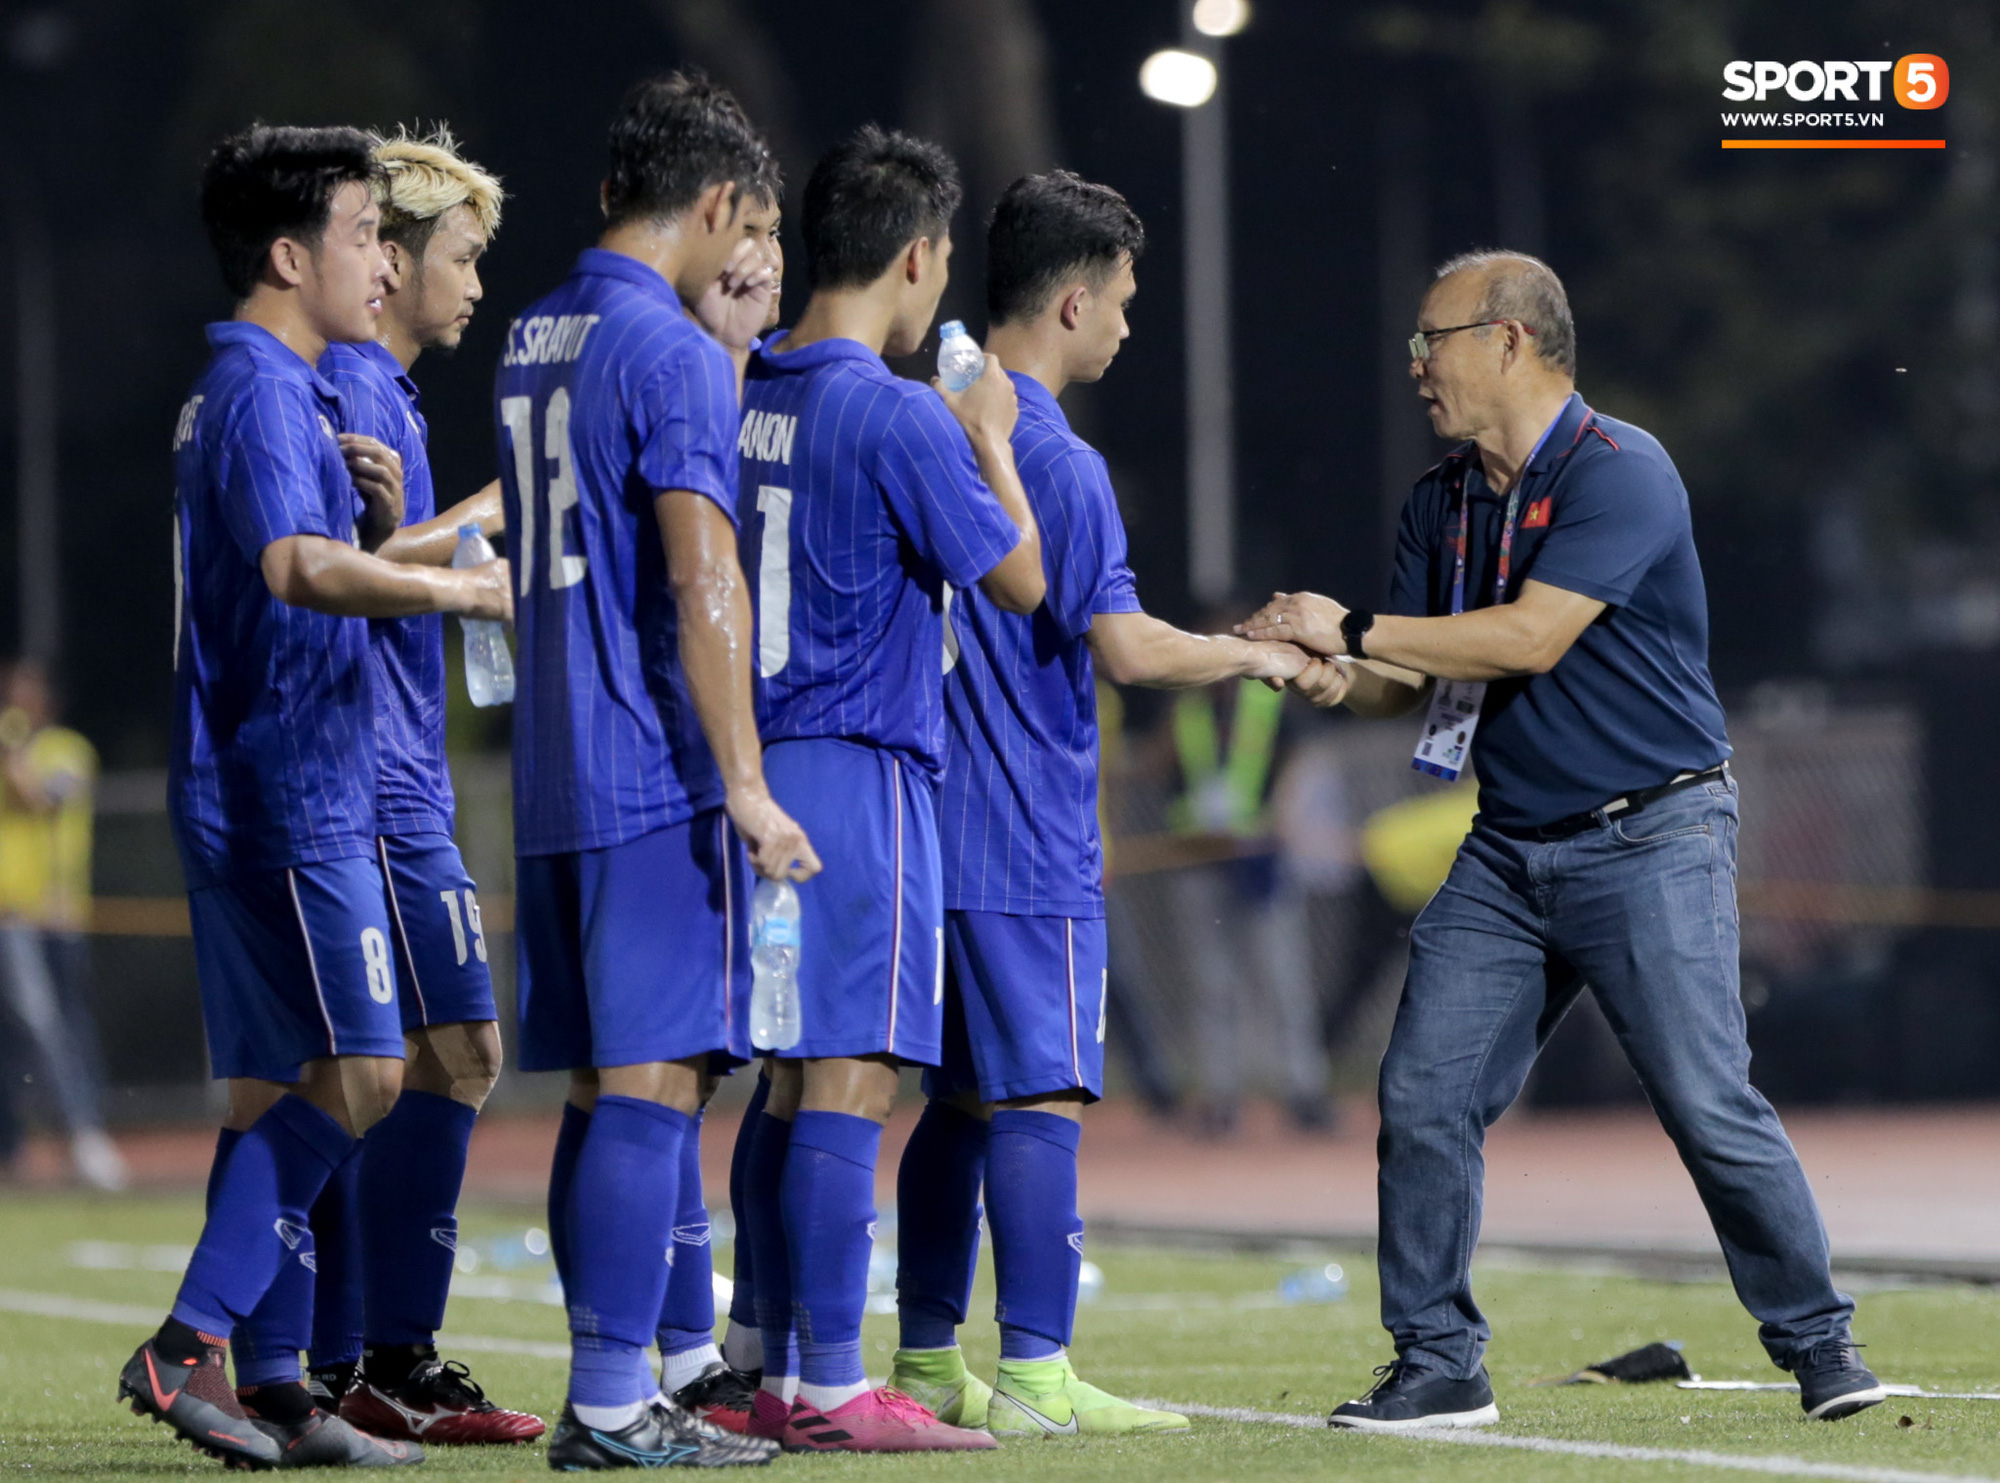 HLV U22 Thái Lan chủ động sang bắt tay thầy Park, hẹn phân thắng bại ở trận tiếp theo sau 3 lần toàn hoà - Ảnh 10.